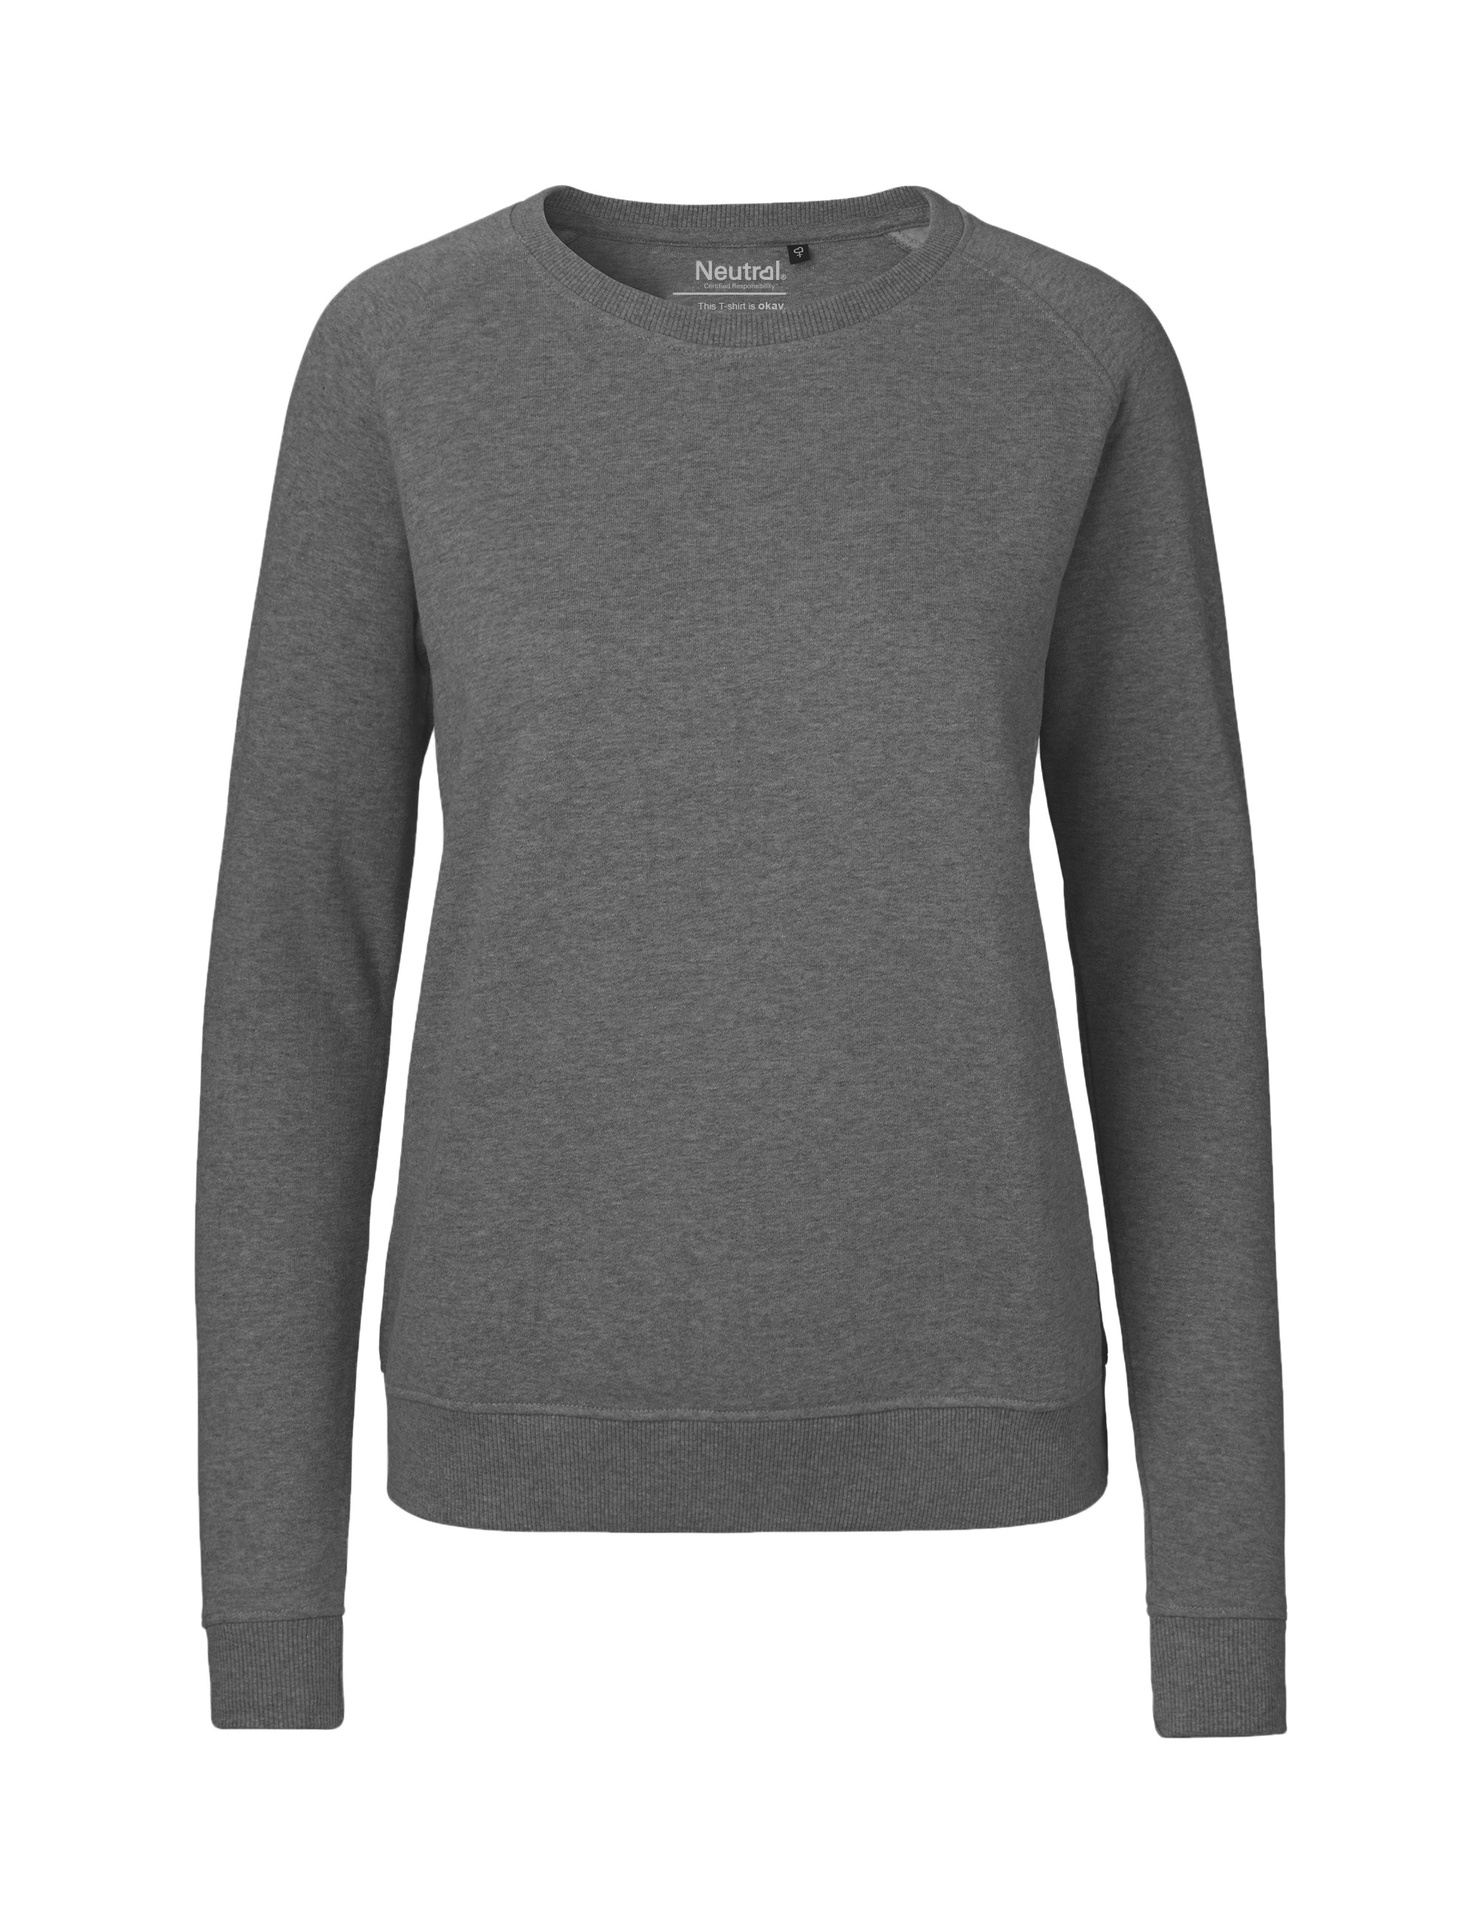 [PR/04878] Ladies Sweatshirt (Dark Heather 08, XL)